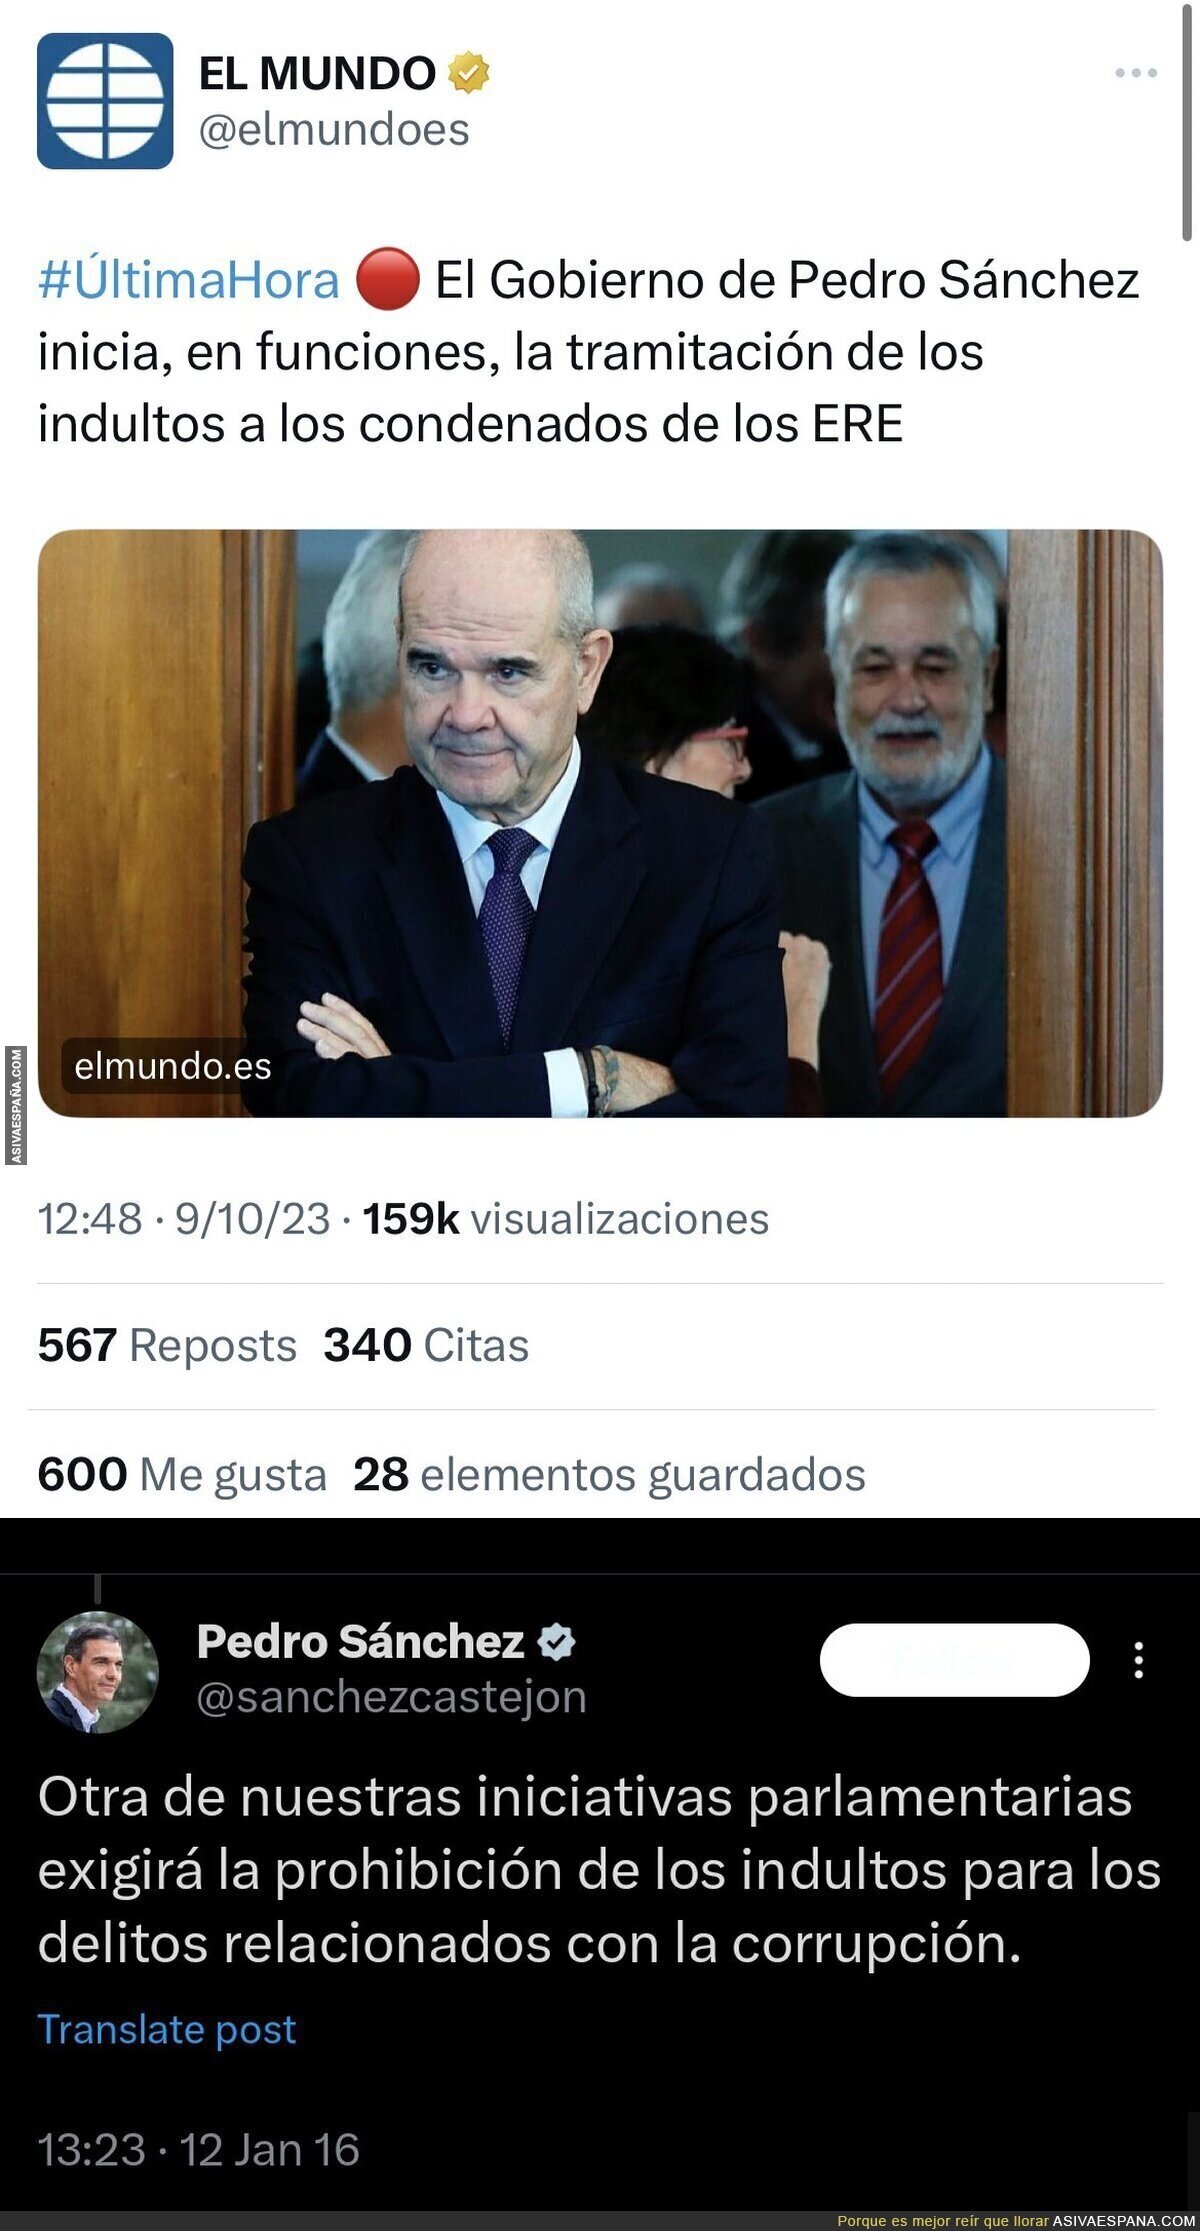 Hablando de indultos y Pedro Sánchez...